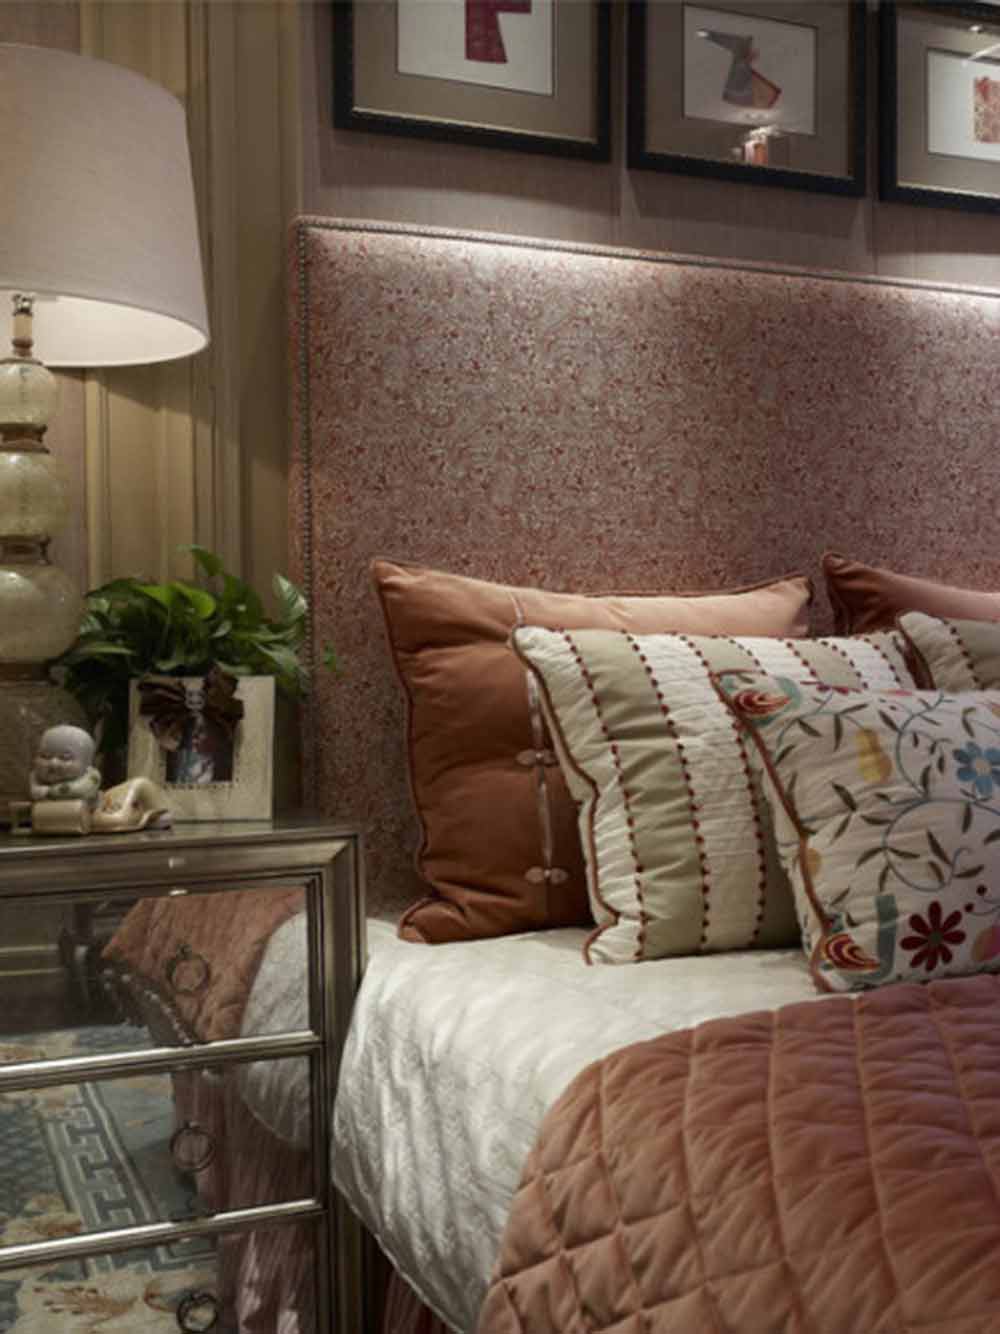 次卧主要采用较为素雅的风格，以橙色调营造了温暖舒心的起居空间。壁画、灯具的选择也较为简洁可爱。